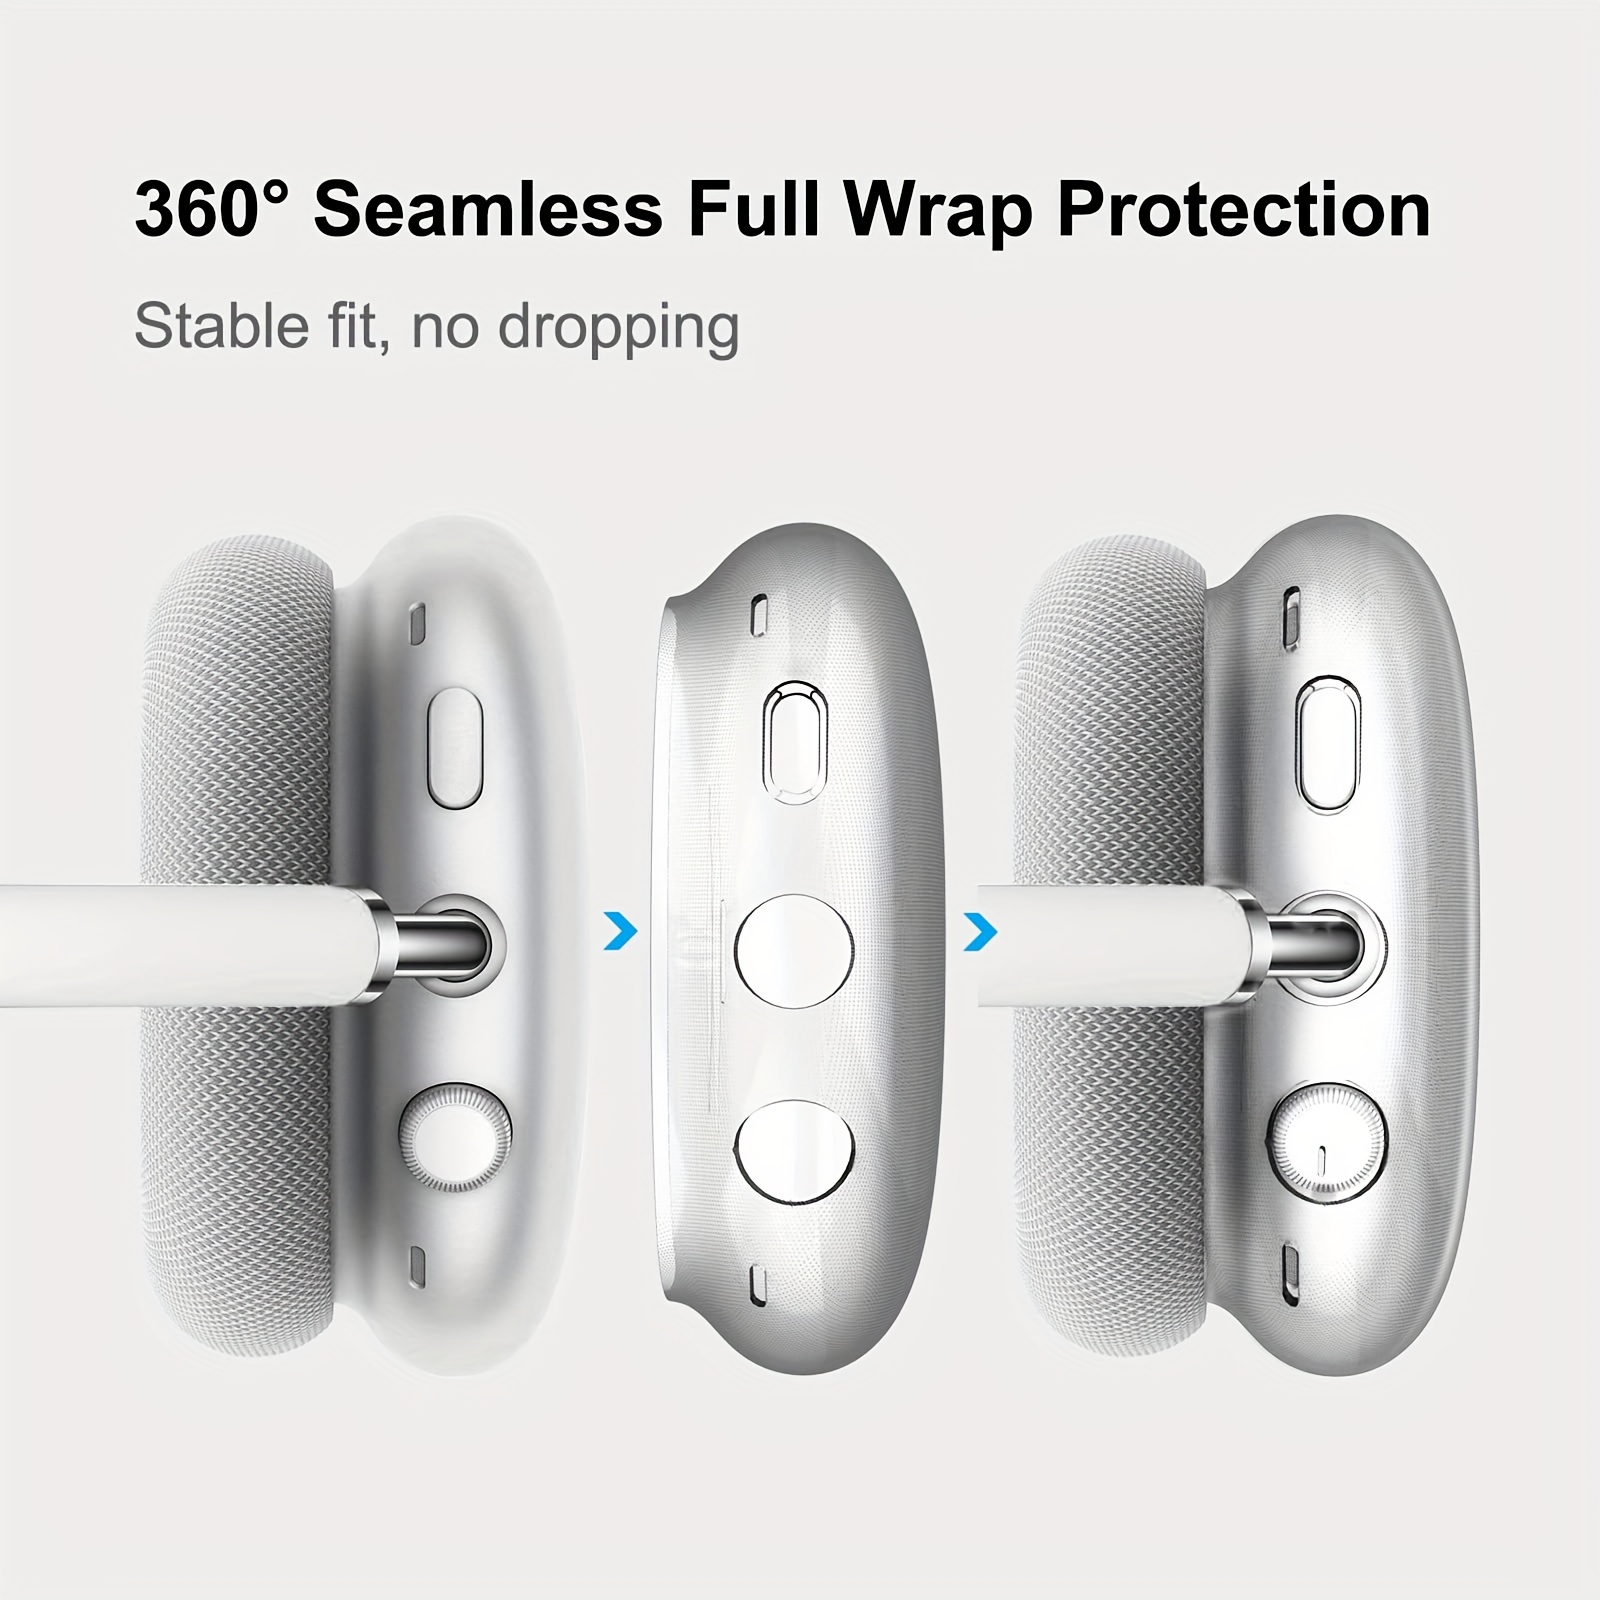 Housse kwmobile pour casque supra-auriculaire - Compatible avec Apple  Airpods Max - En